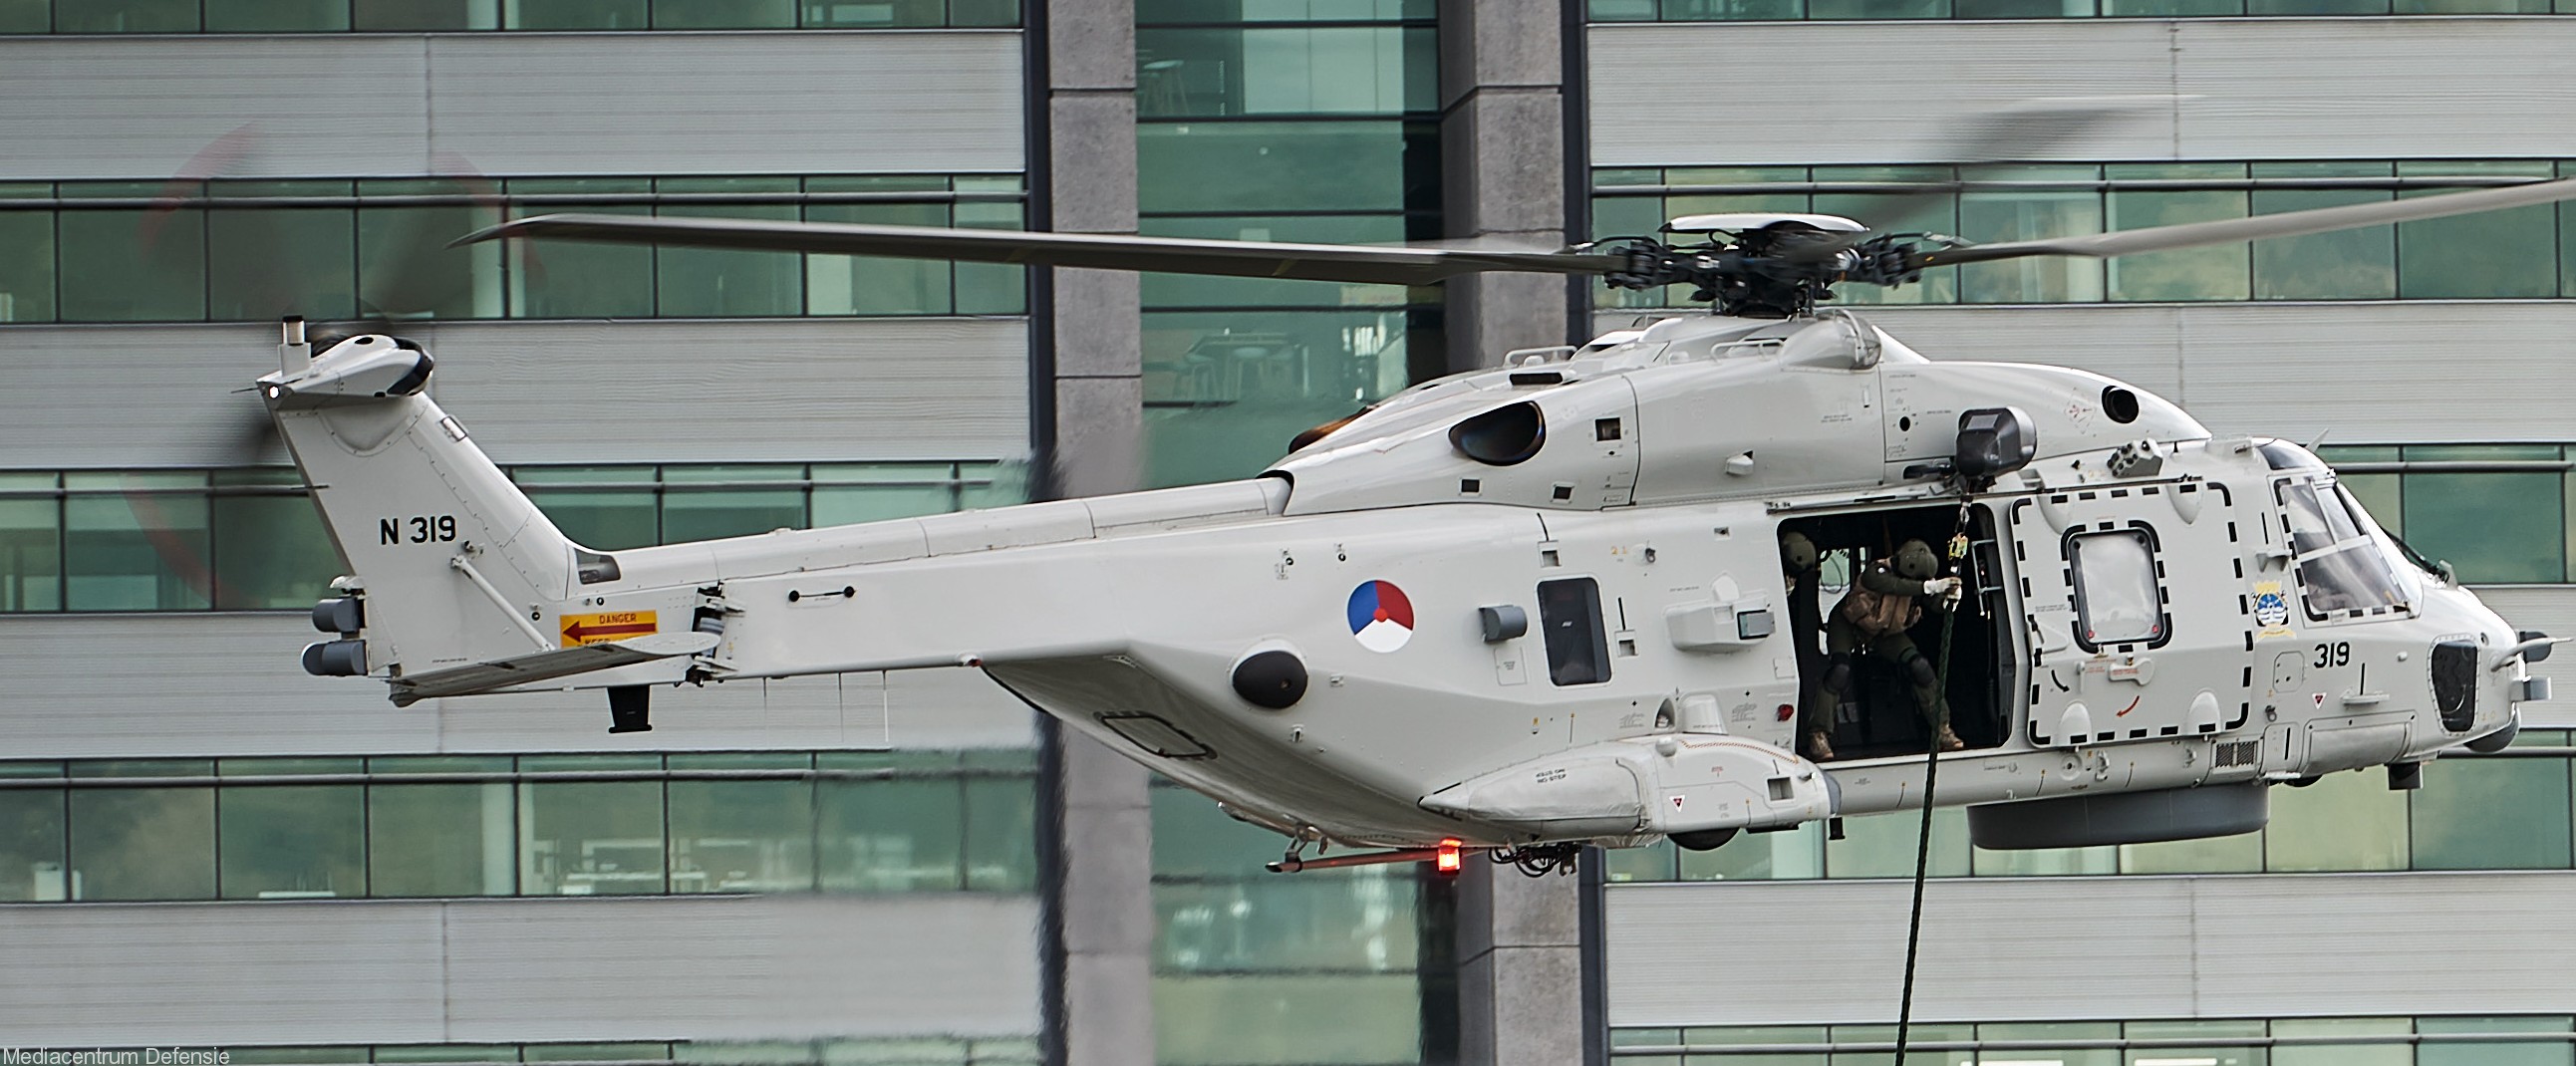 nh90 nfh helicopter royal netherlands navy koninklijke marine n-319 02